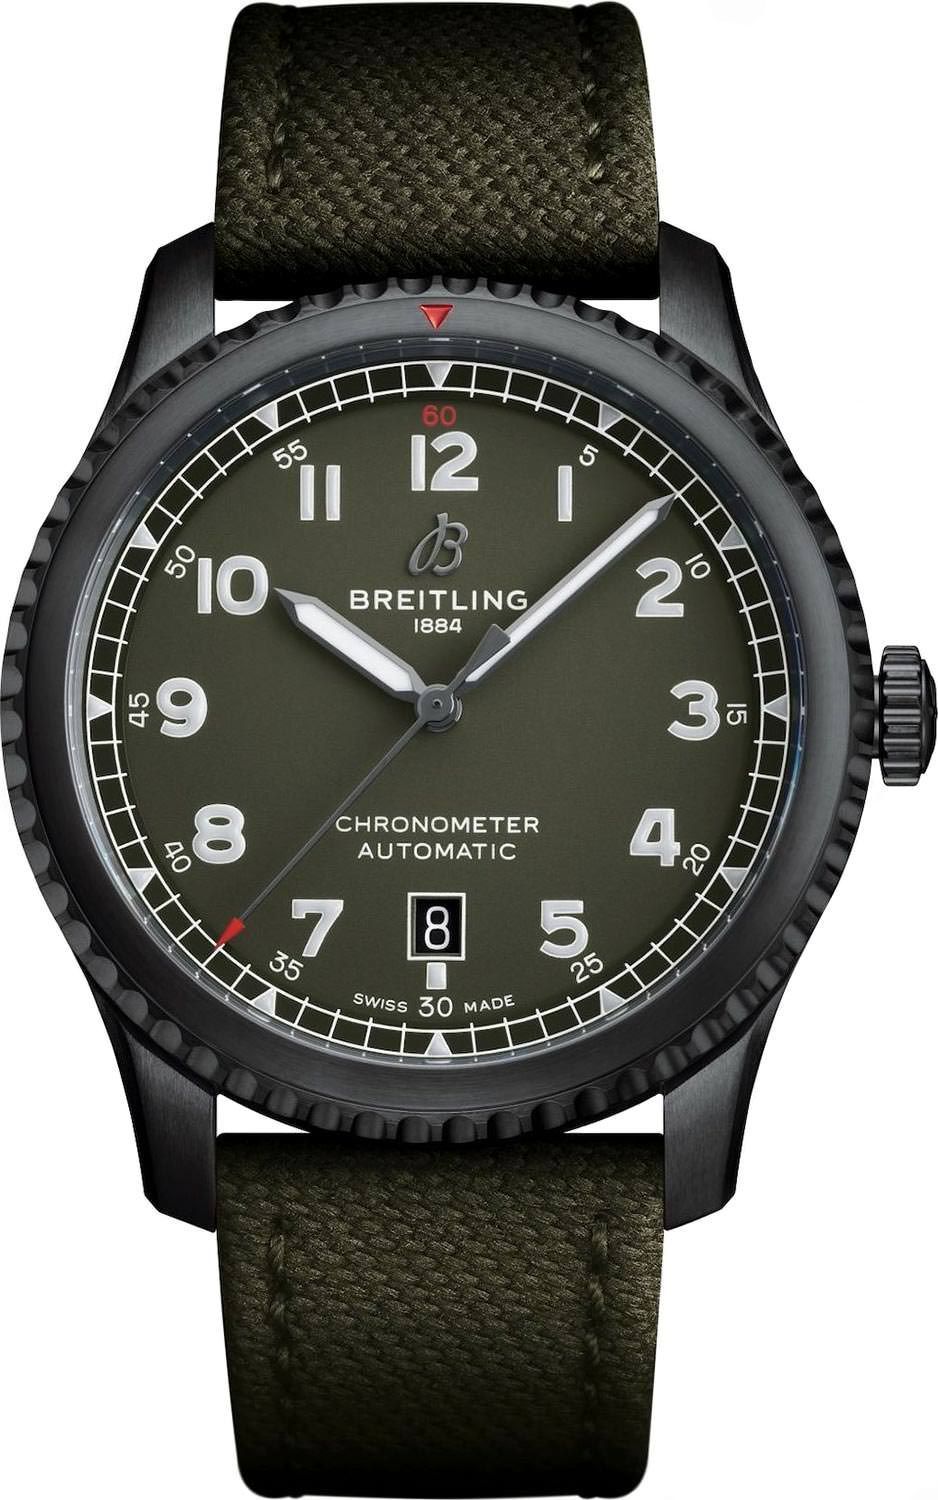 Breitling Navitimer Navitimer 8 Green Dial 41 mm Automatic Watch For Men - 1